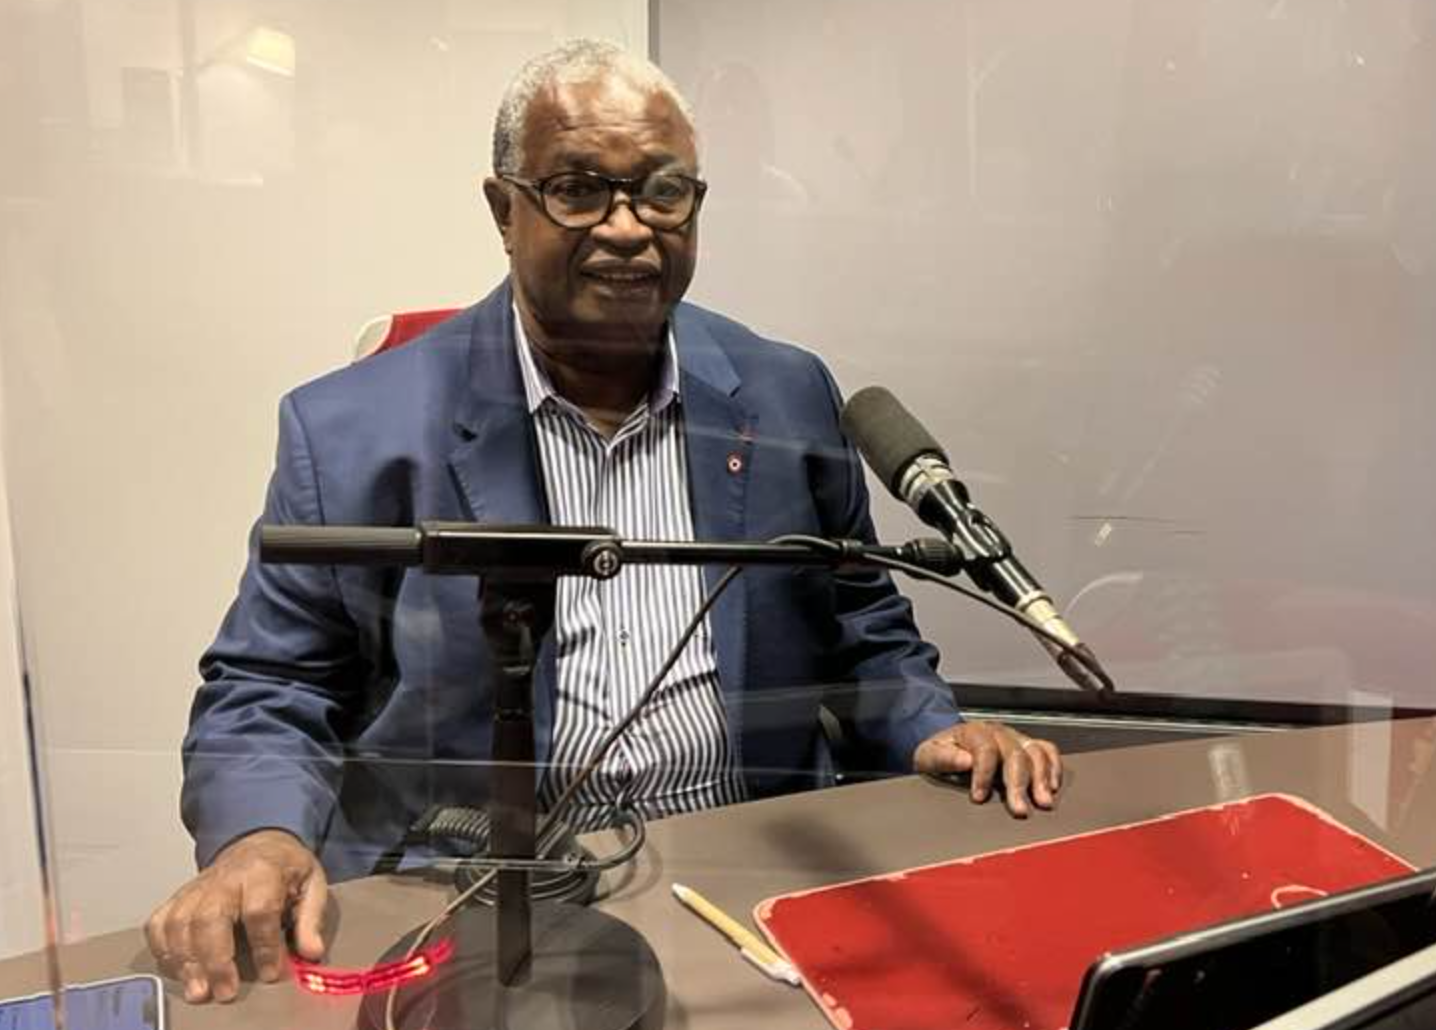 Wuambushu : Mansour Kamardine parle de "harcèlement judiciaire orchestré par des associations"